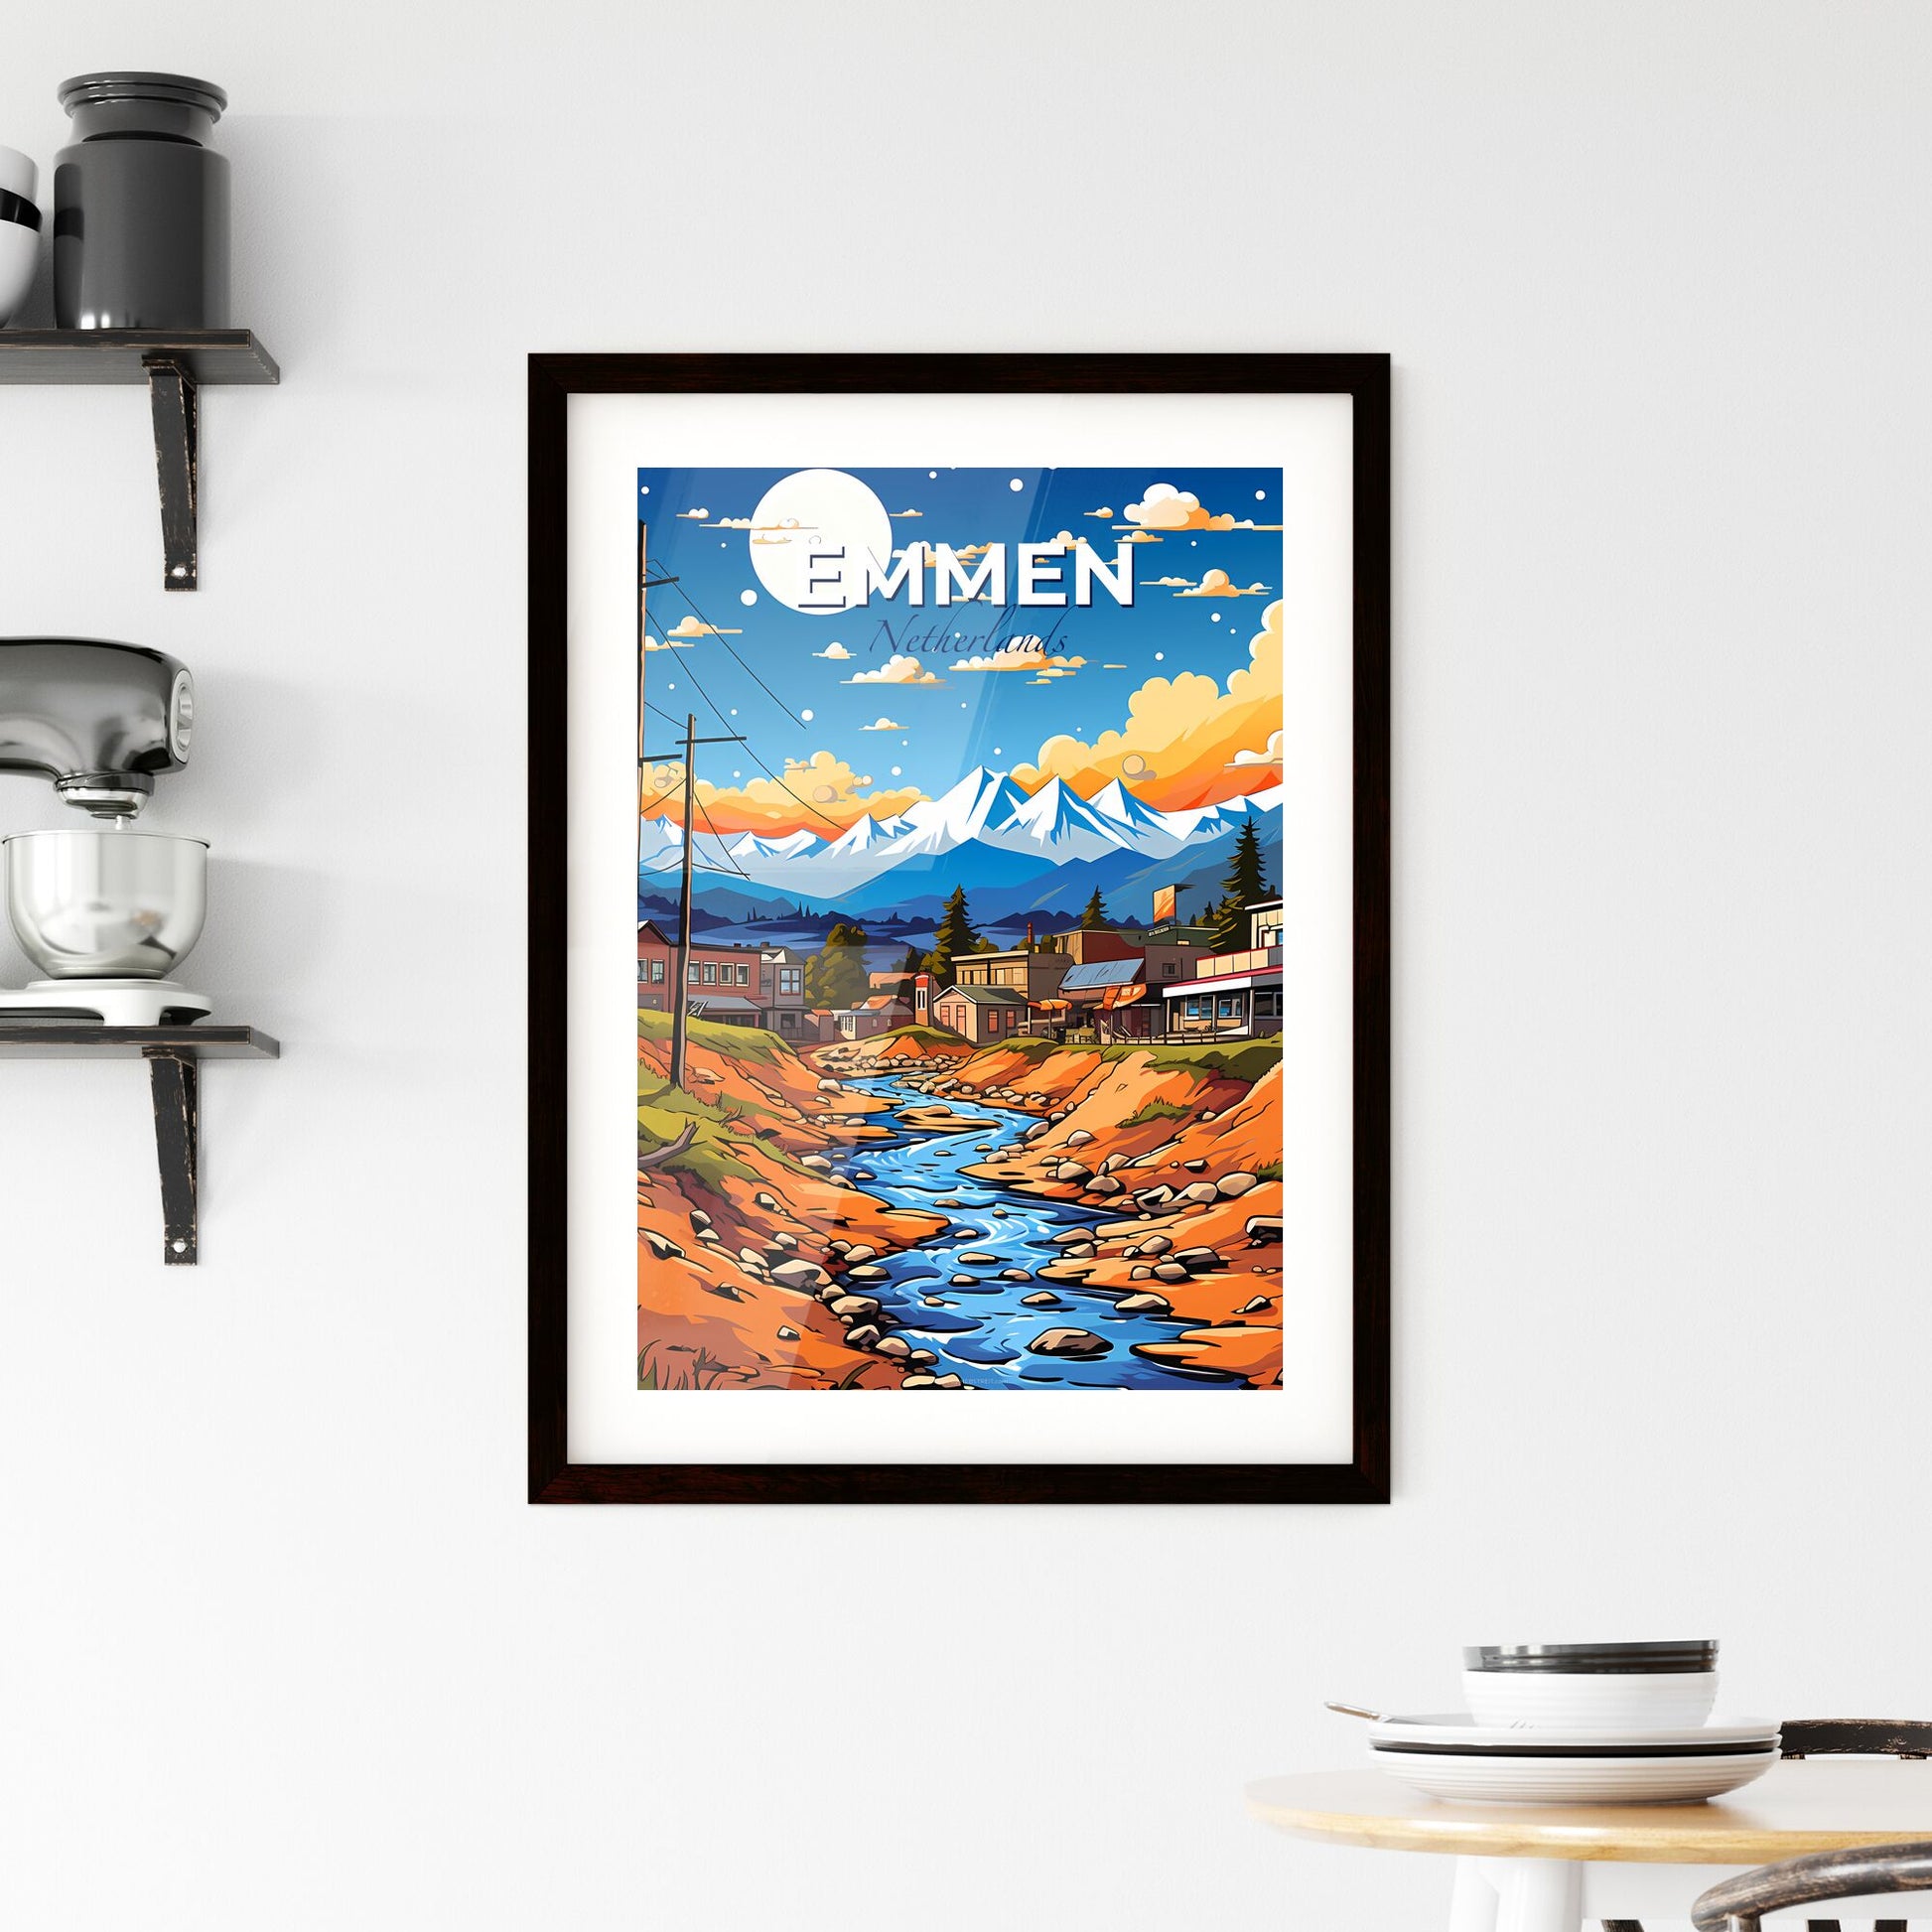 Emmen, Netherlands, A Poster of a river running through a town Default Title